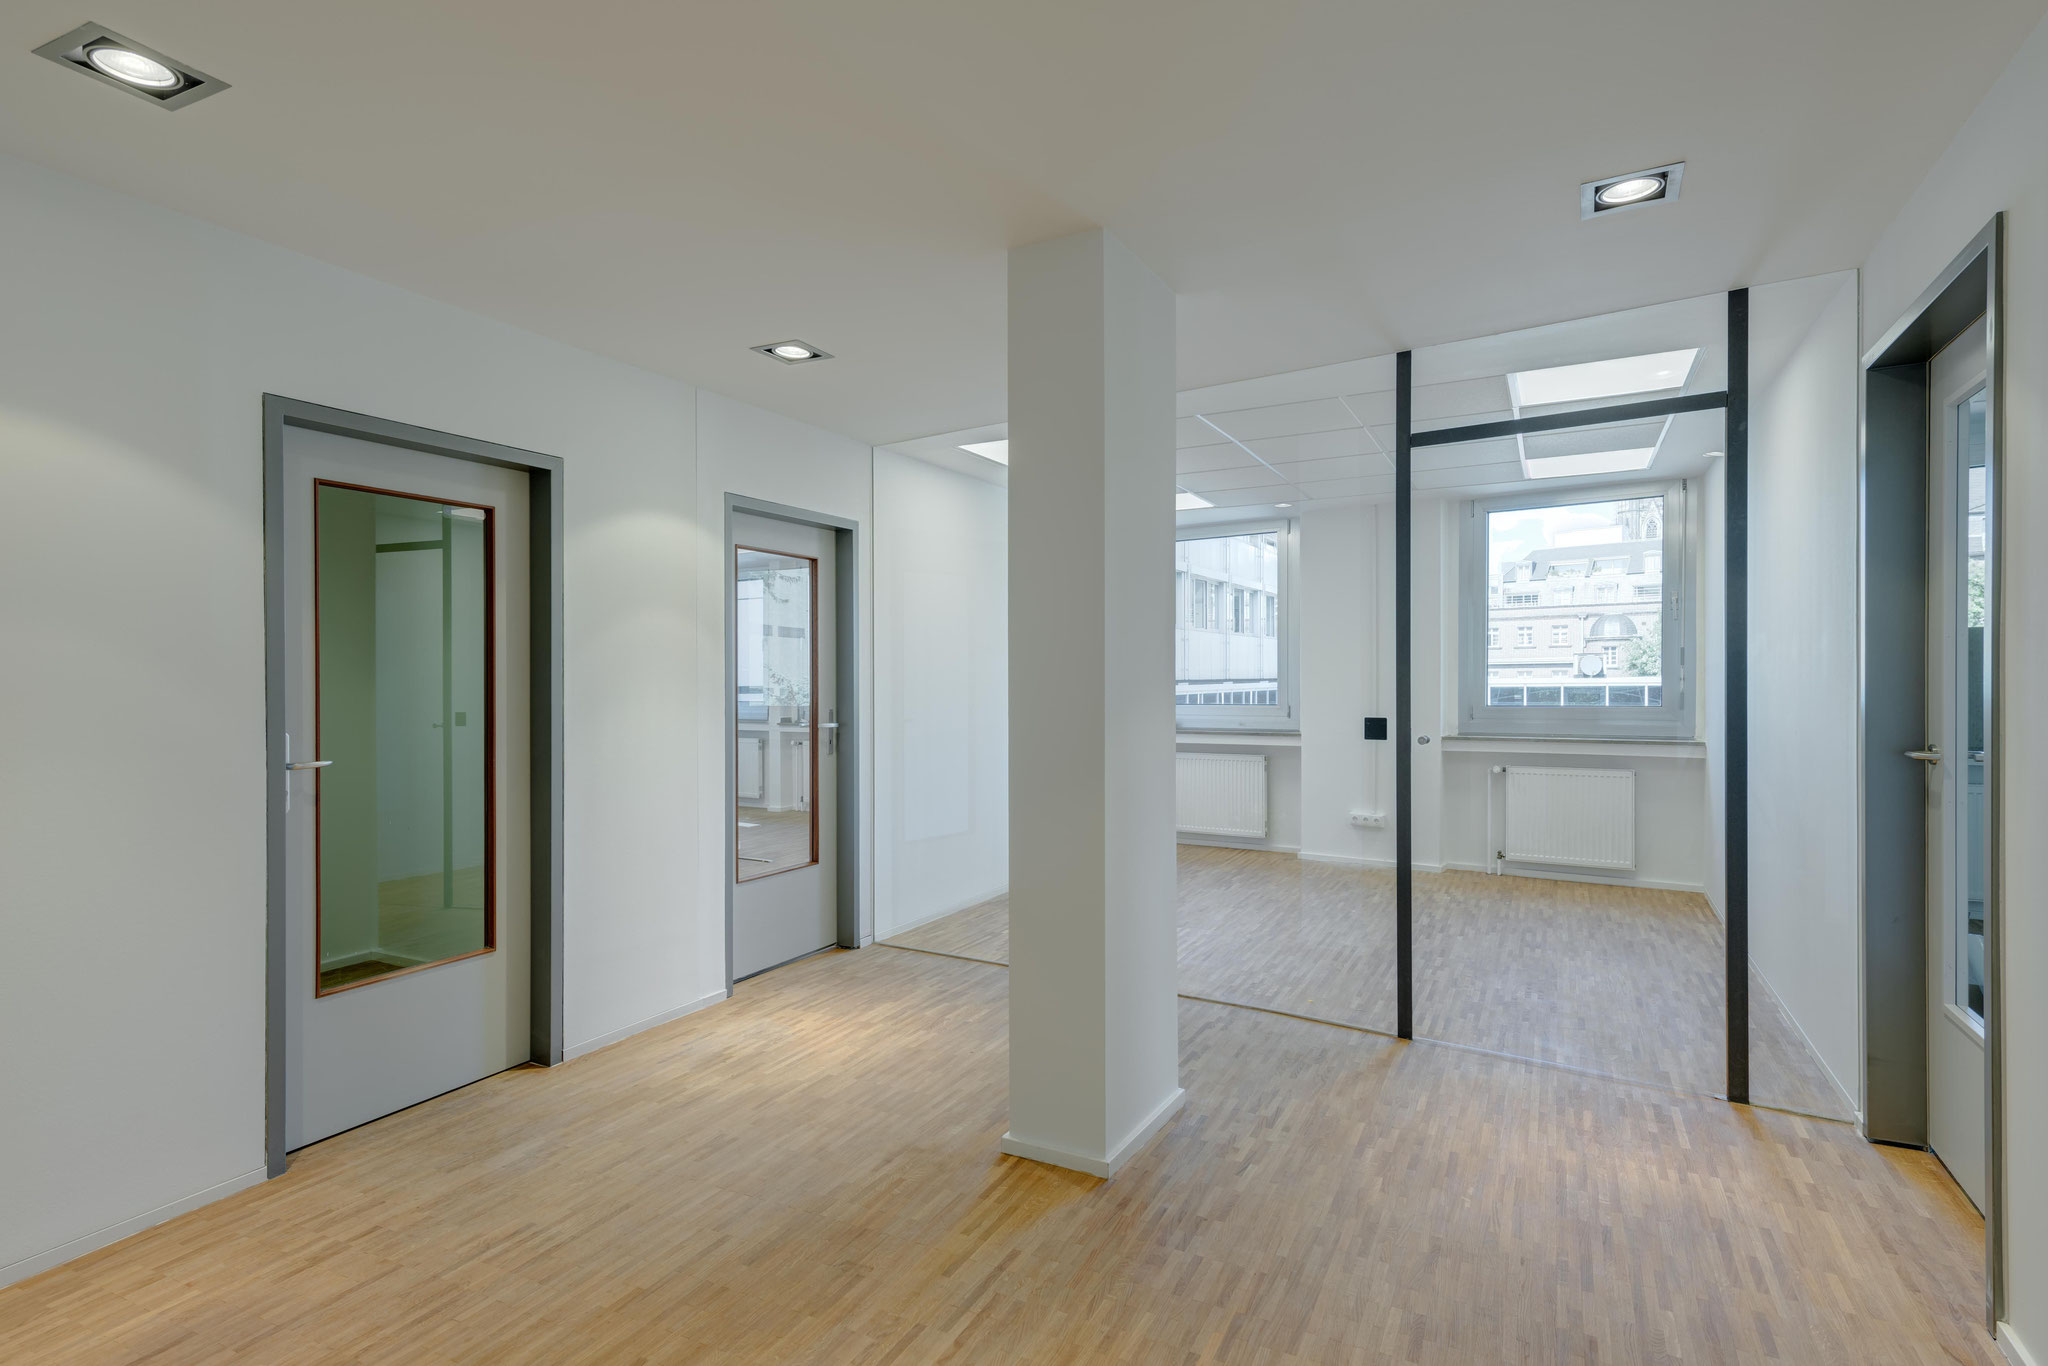 Projekt in Köln: Revitalisierung einer Büroetage. Holzwolle-Akustikdecken, Gipskarton-Trennwände, Glastüren, Holztüren, Bodenbeläge, Fliesen, Parkett und Malerarbeiten